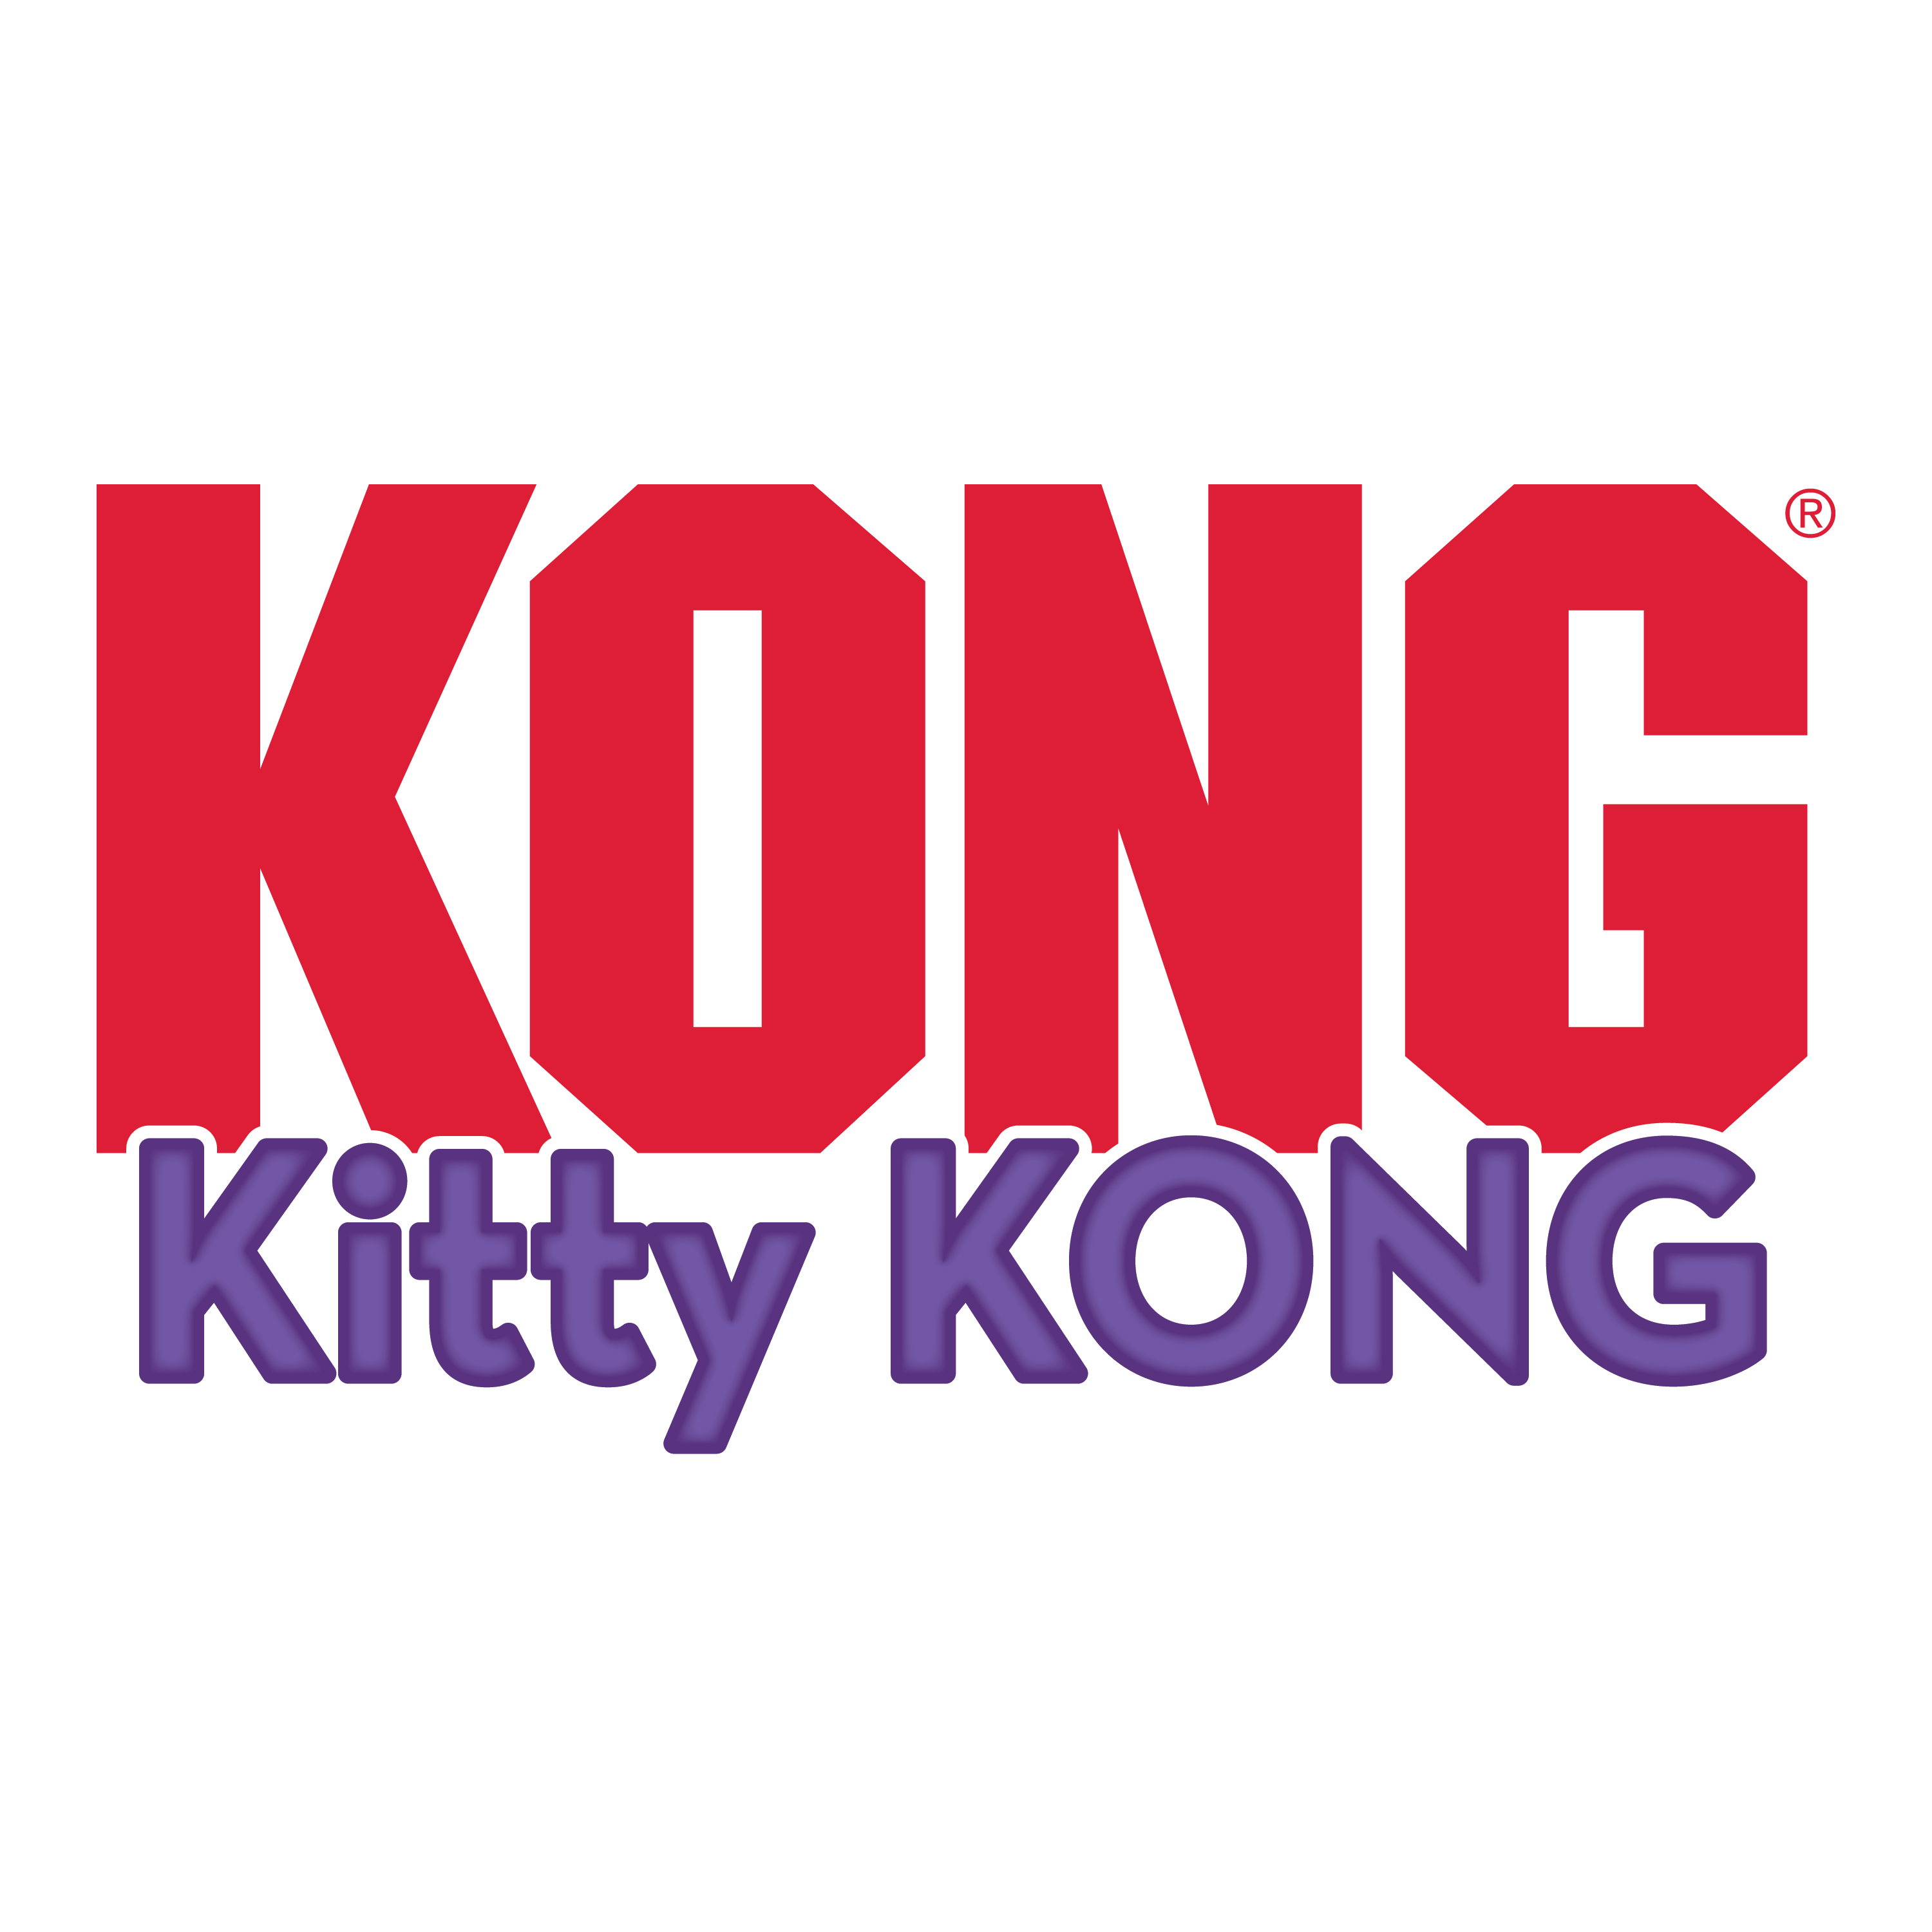 Kitty KONG alt1 product image